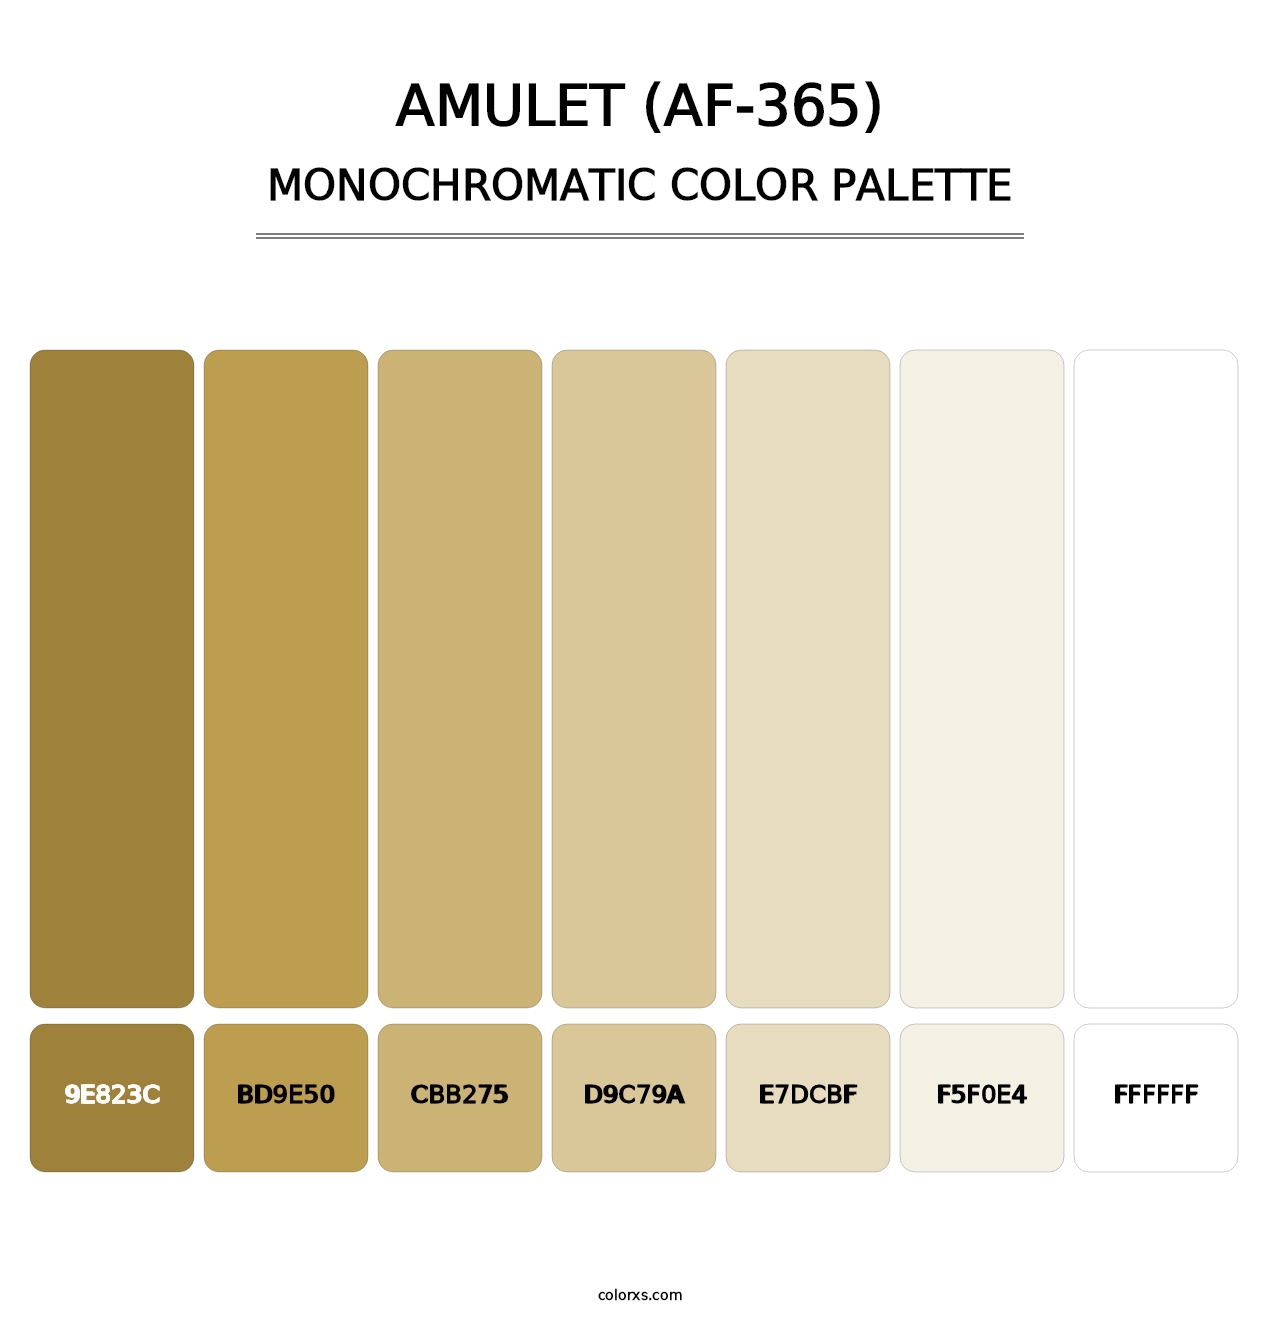 Amulet (AF-365) - Monochromatic Color Palette